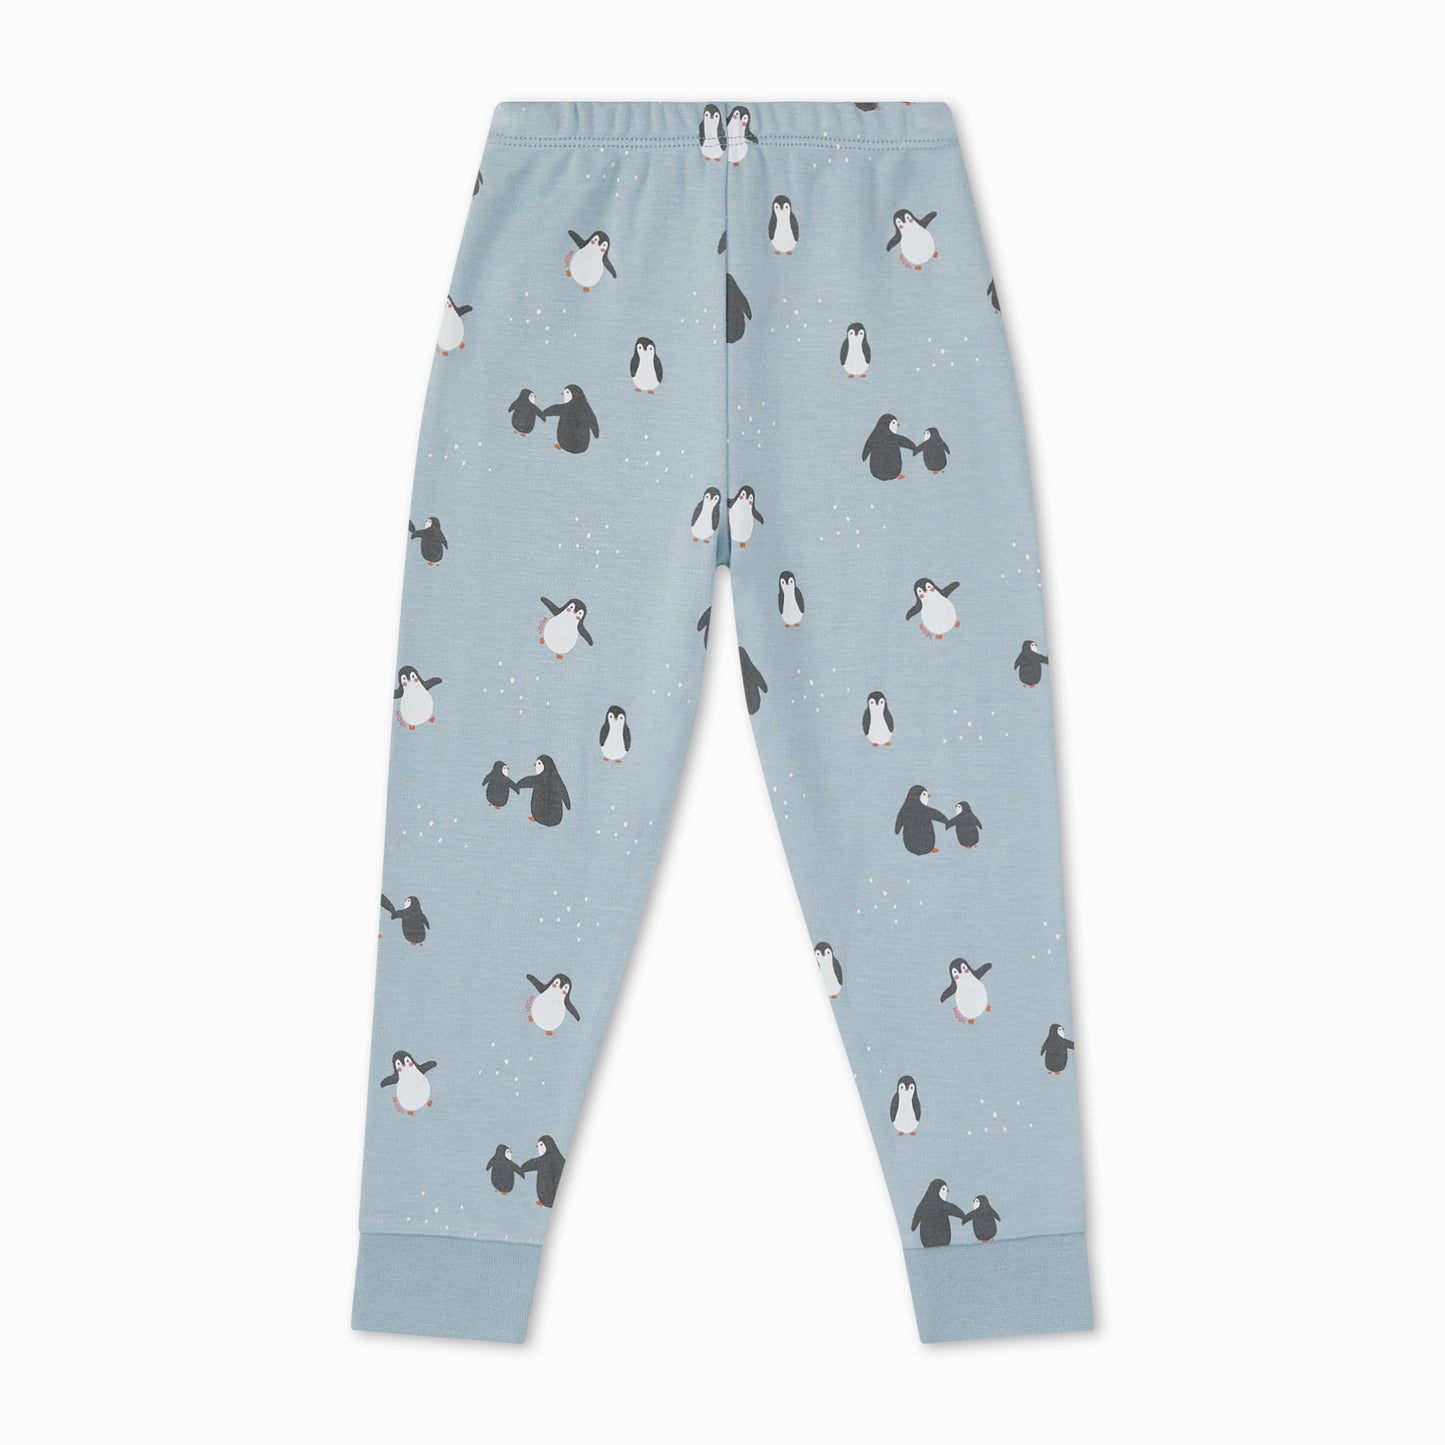 Penguin print pyjamas